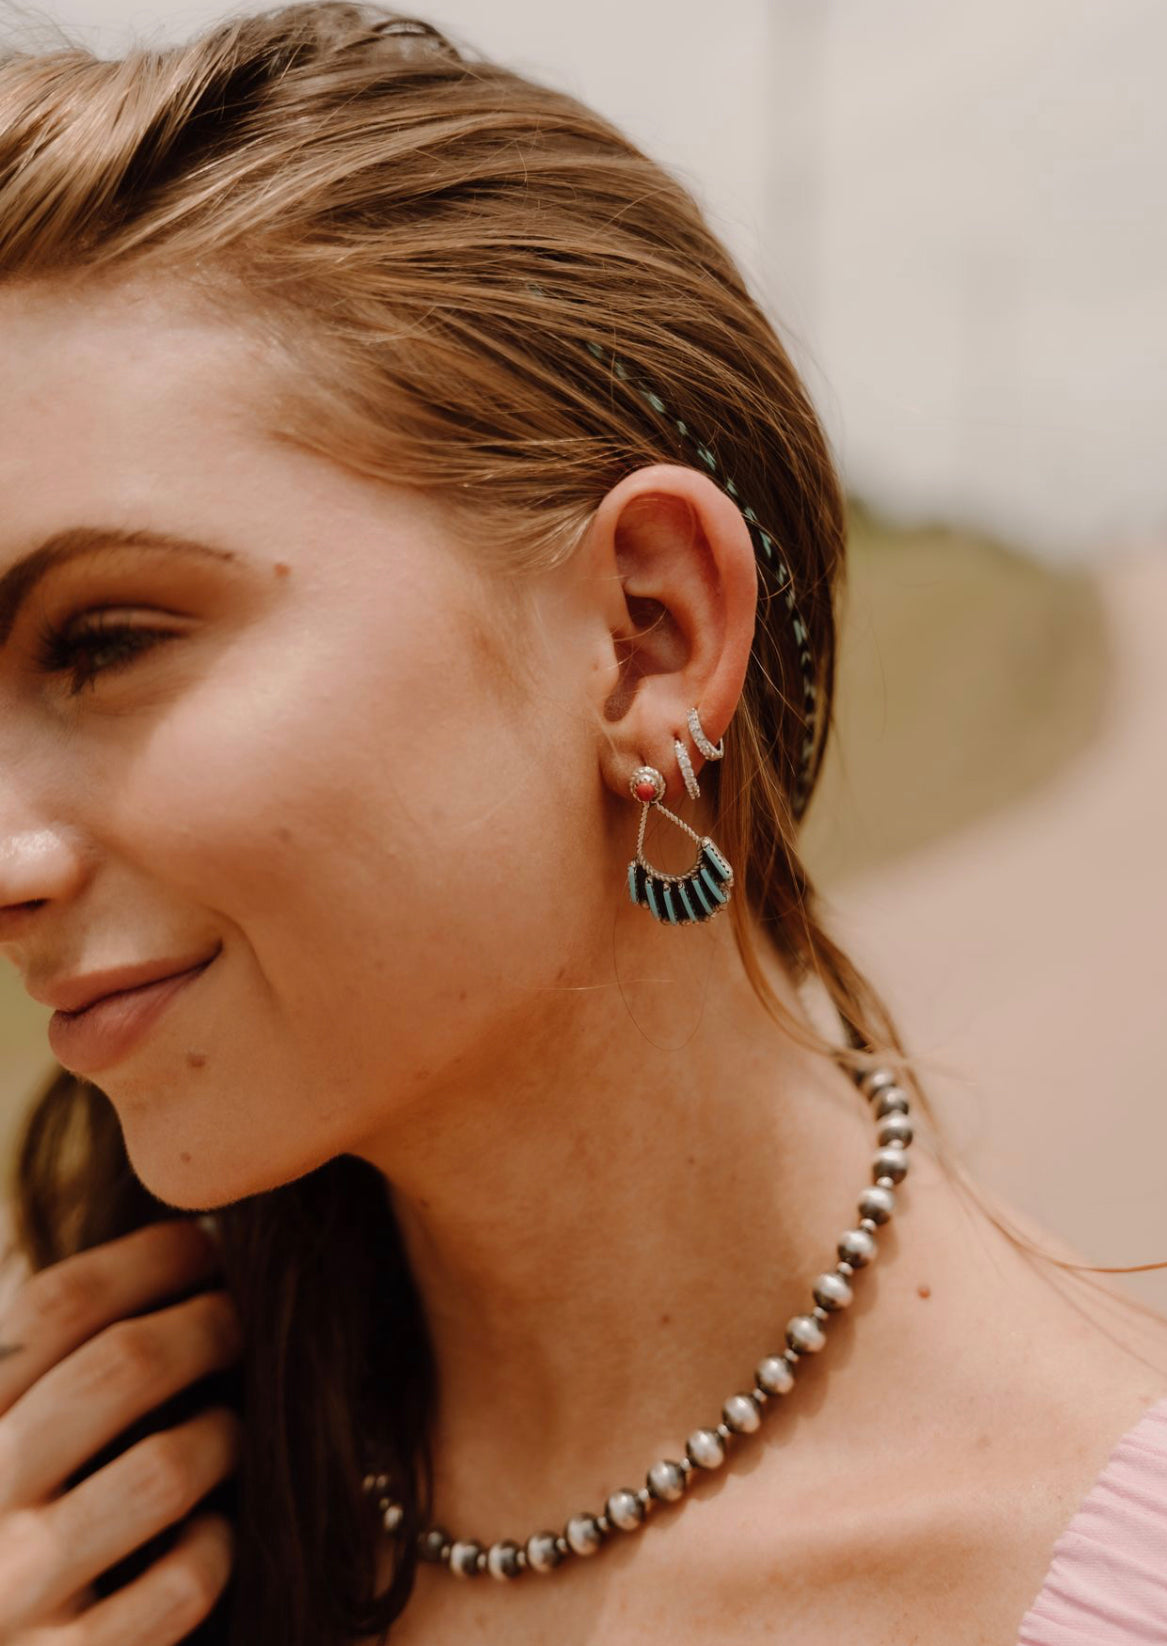 The Kaylee Earrings